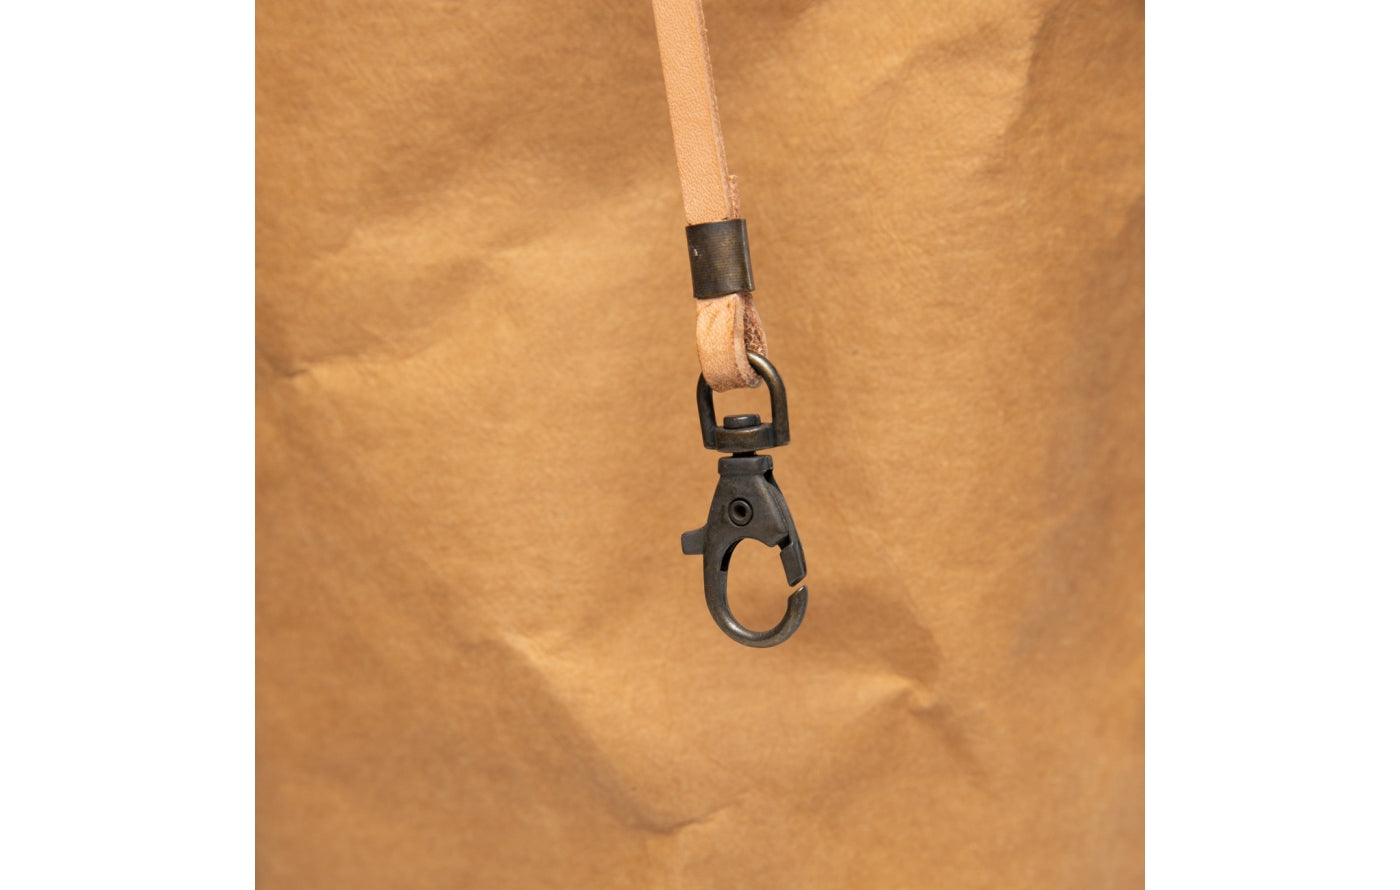     2.8 duepuntootto ANNIE paper dog bag havana canvas moderne Hundereisetasche